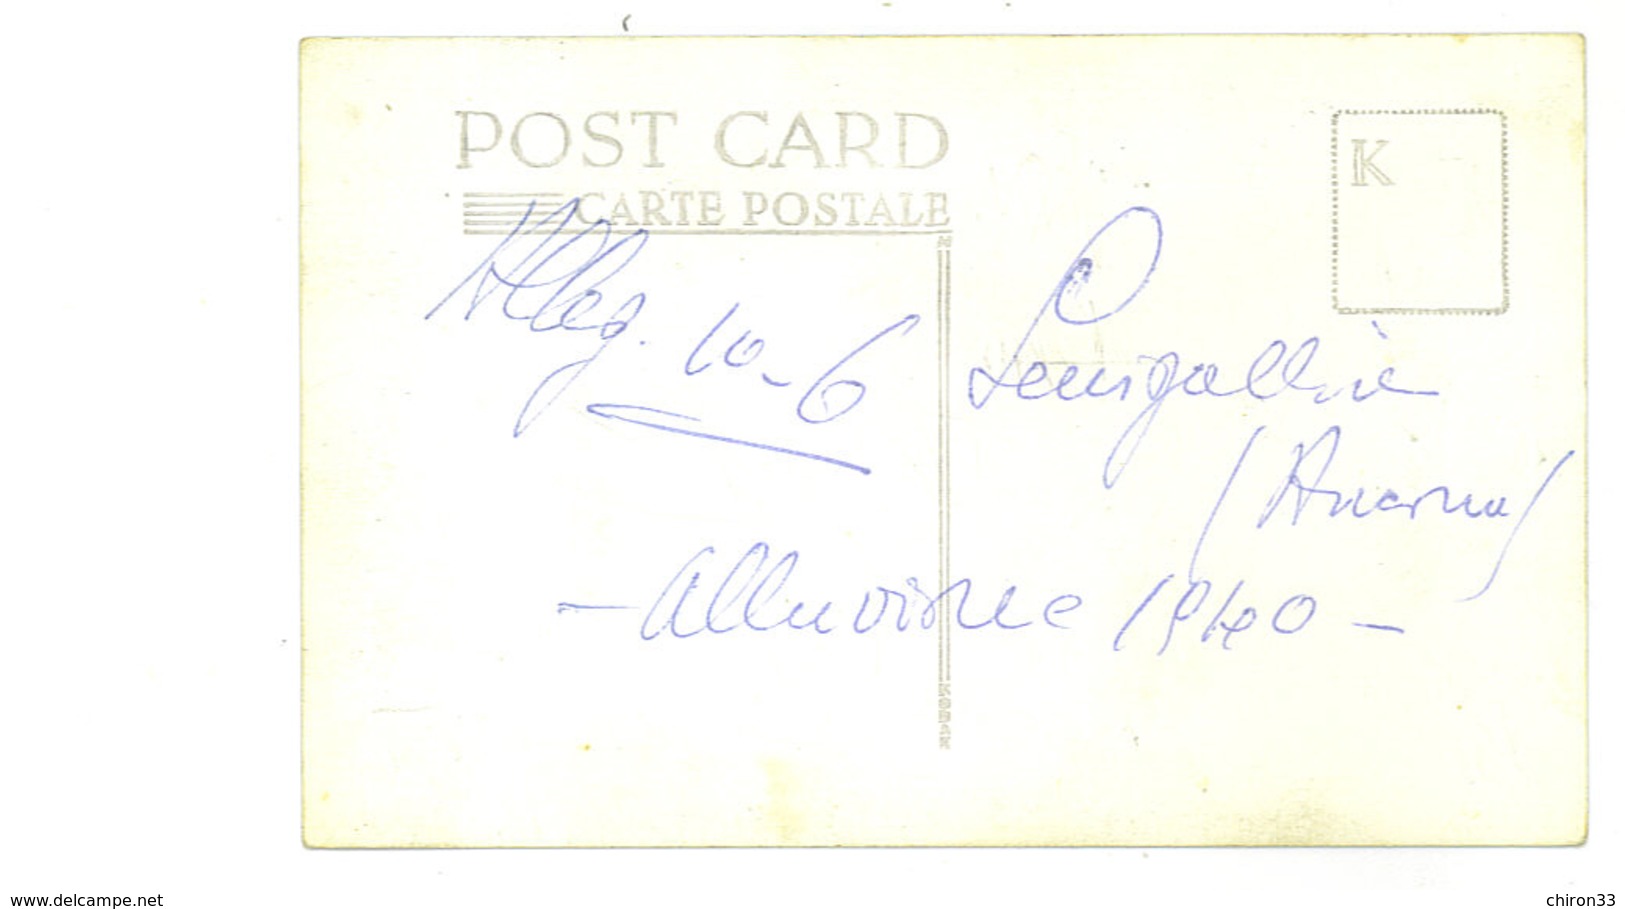 Senigallia lotto cartoline fotografiche alluvione 1940.